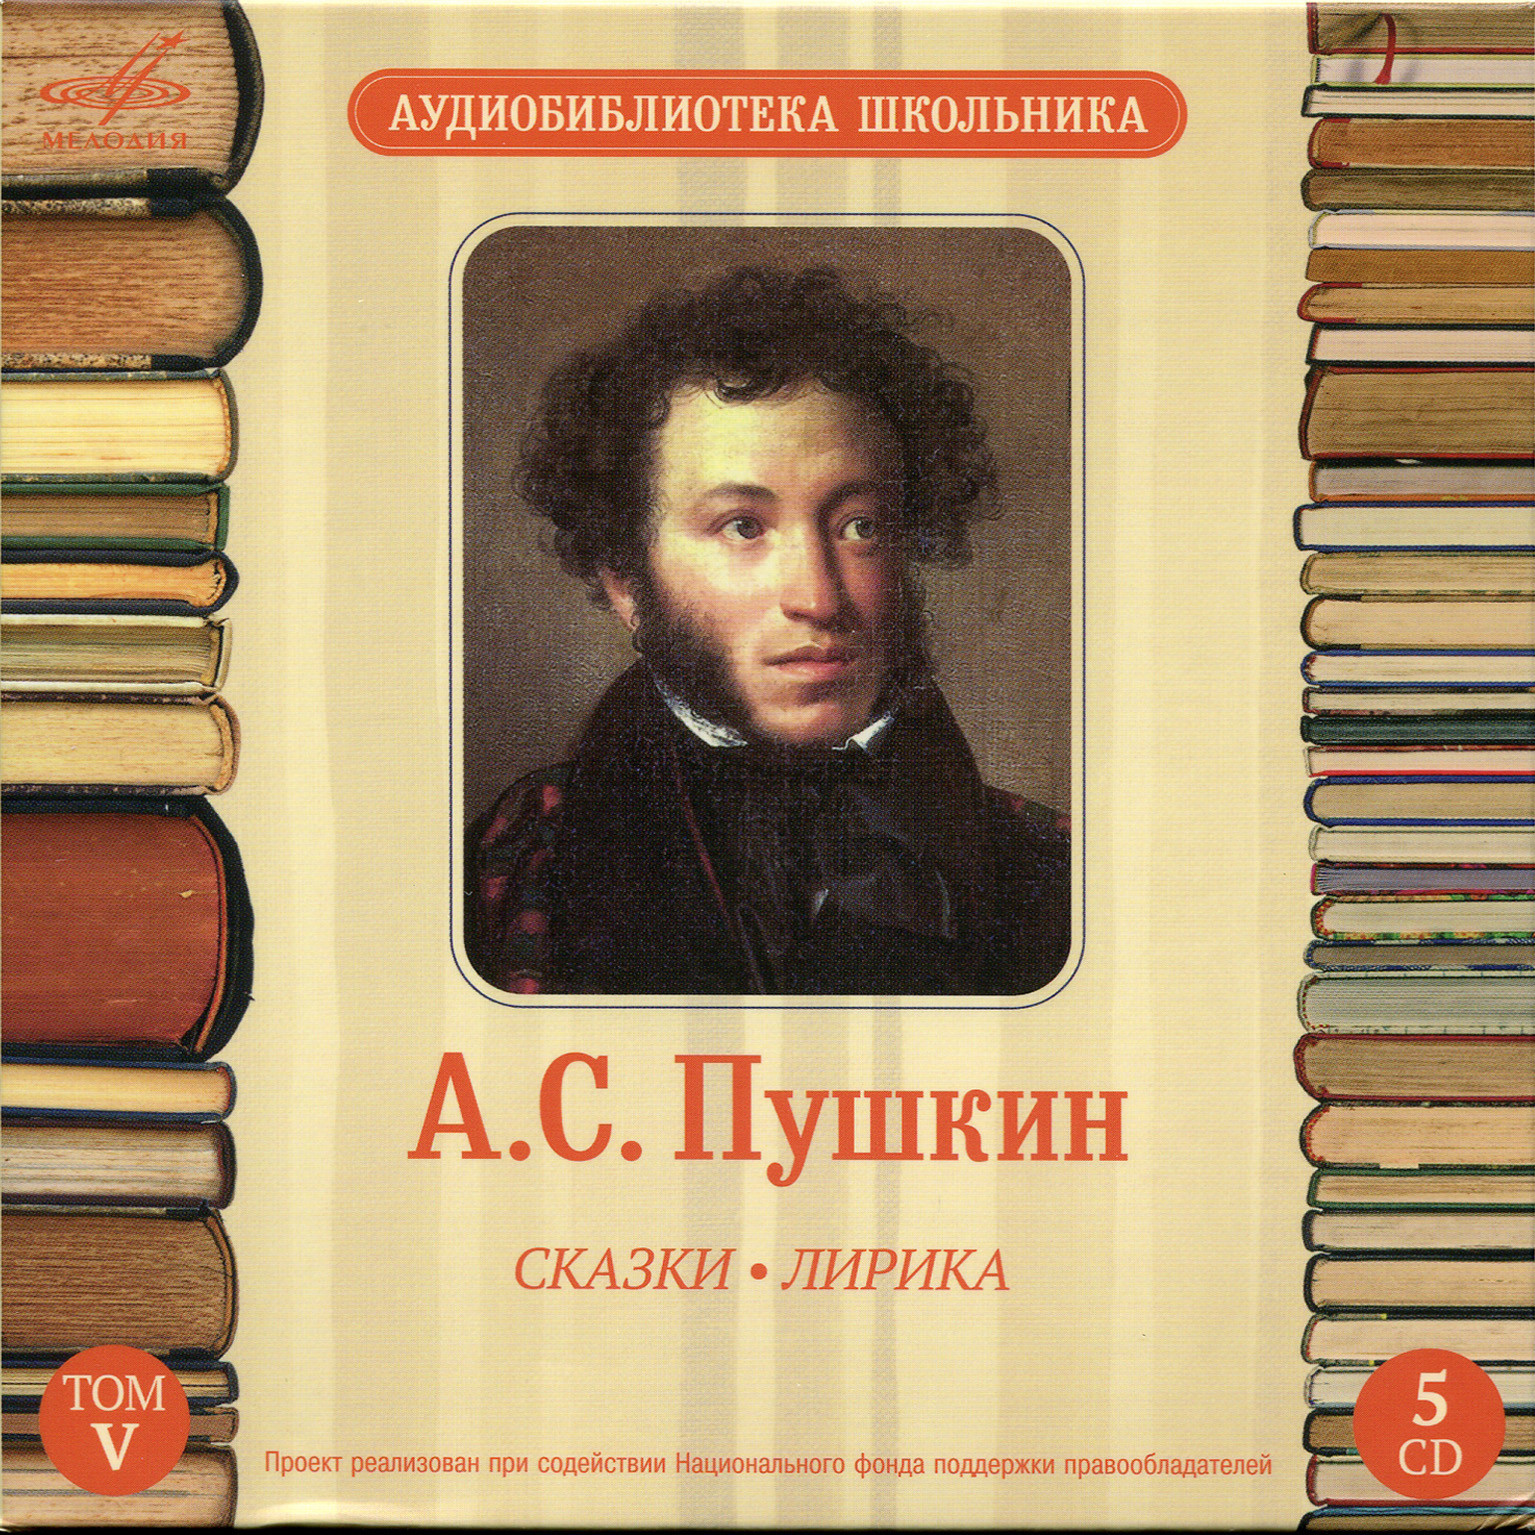 Аудиобиблиотека школьника. Том V. А. С. Пушкин - Сказки. Лирика (5 CD)